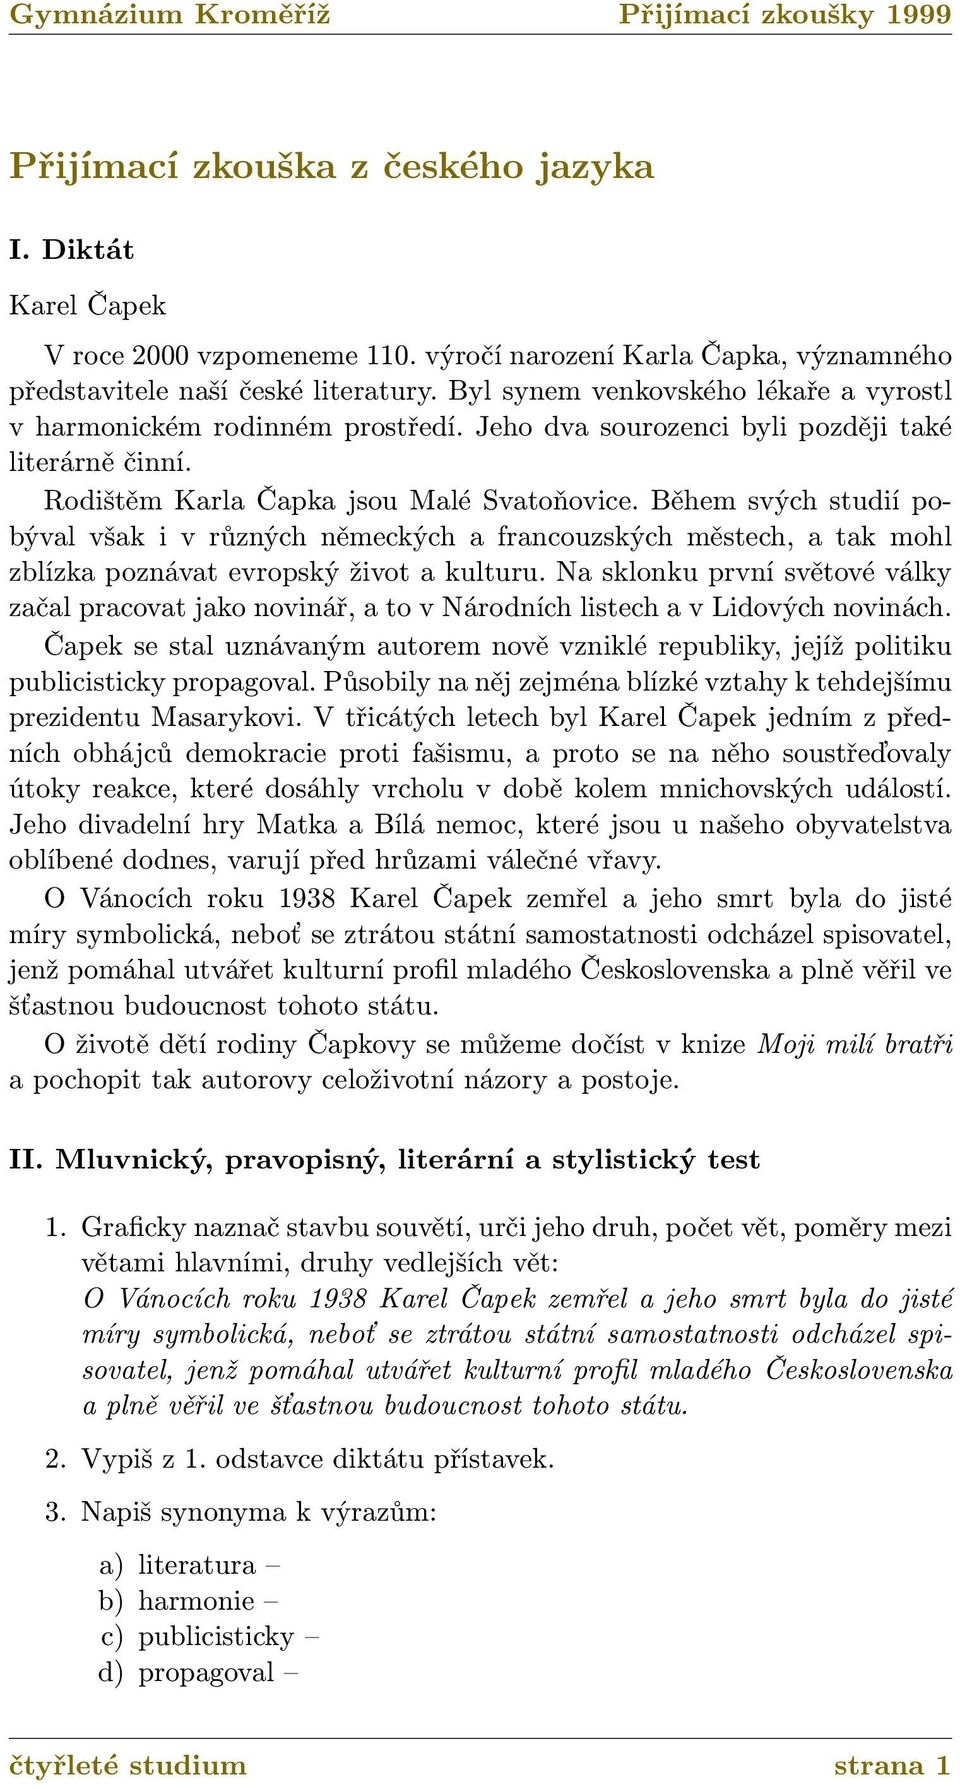 Přijímací zkouška z českého jazyka - PDF Free Download